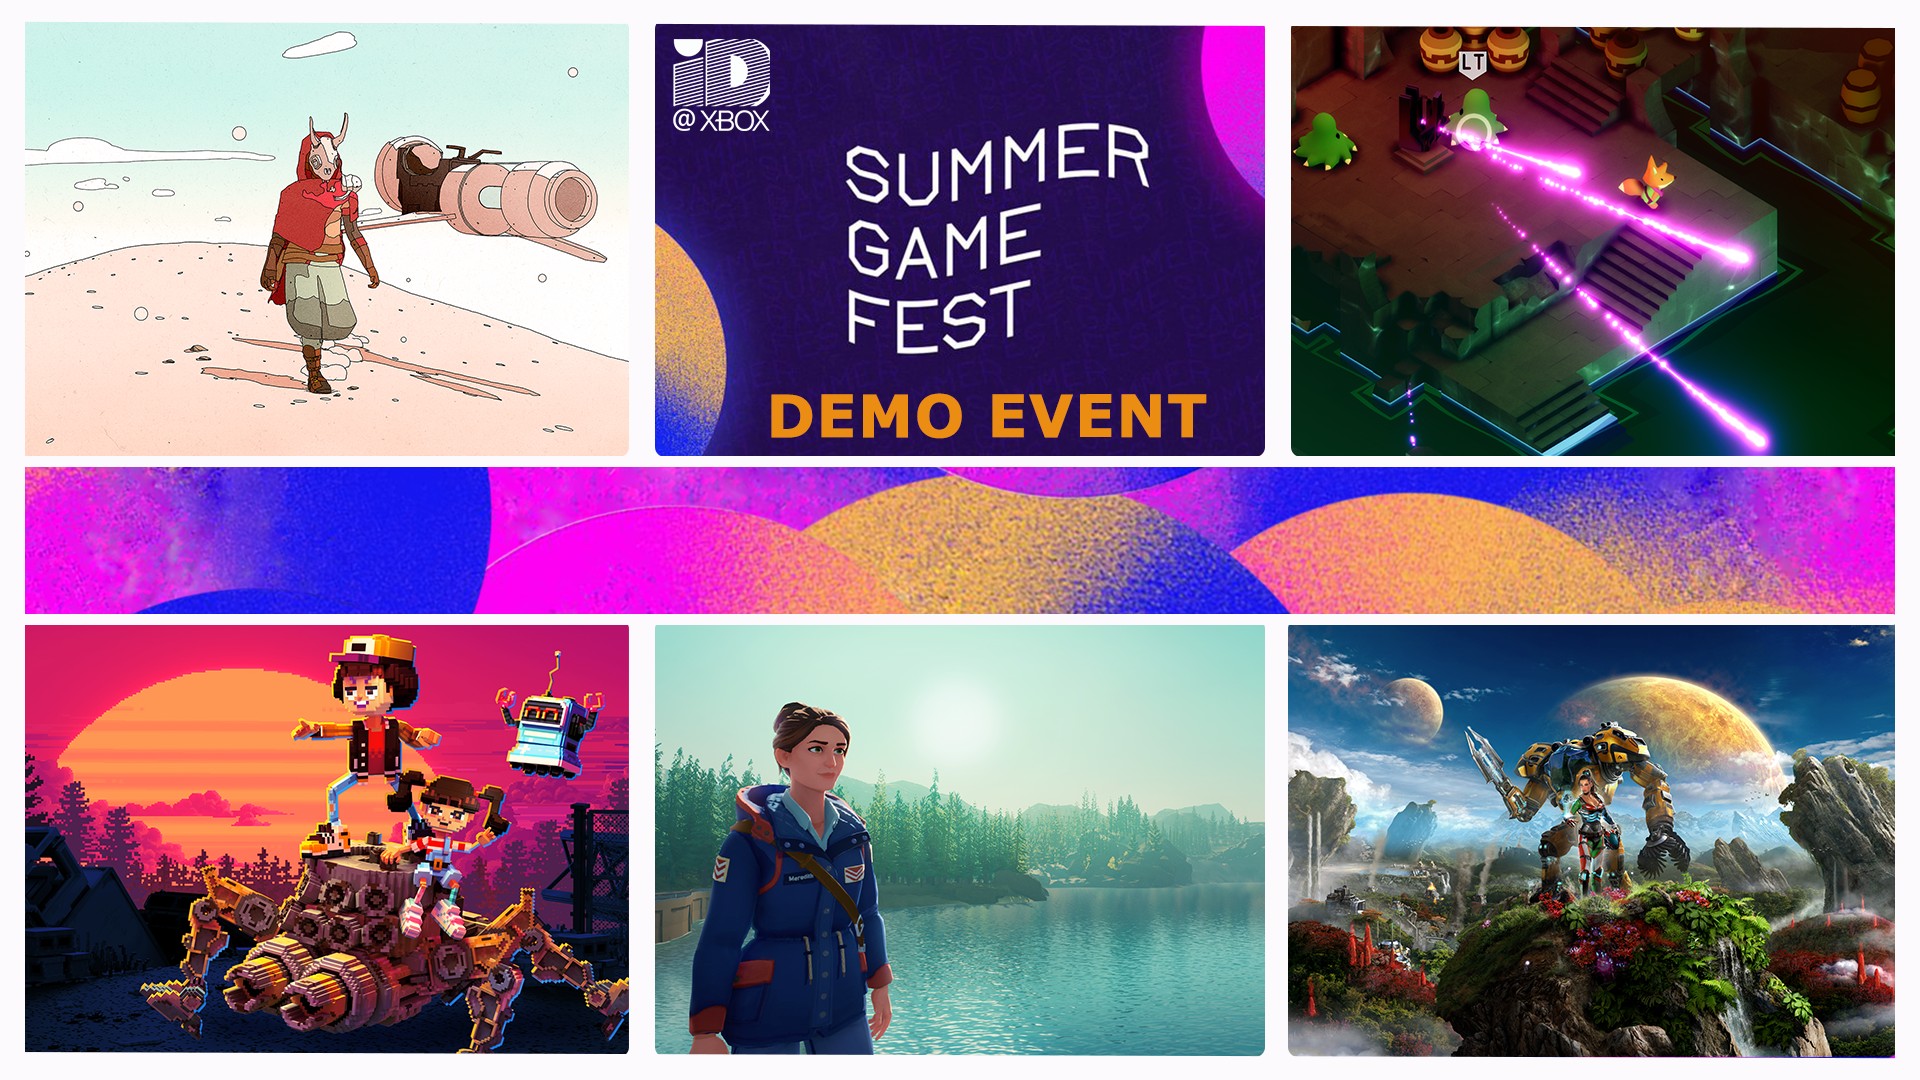 Sei beim zweiten ID@Xbox Summer Game Fest Demo-Event ab dem 15. Juni dabei HERO